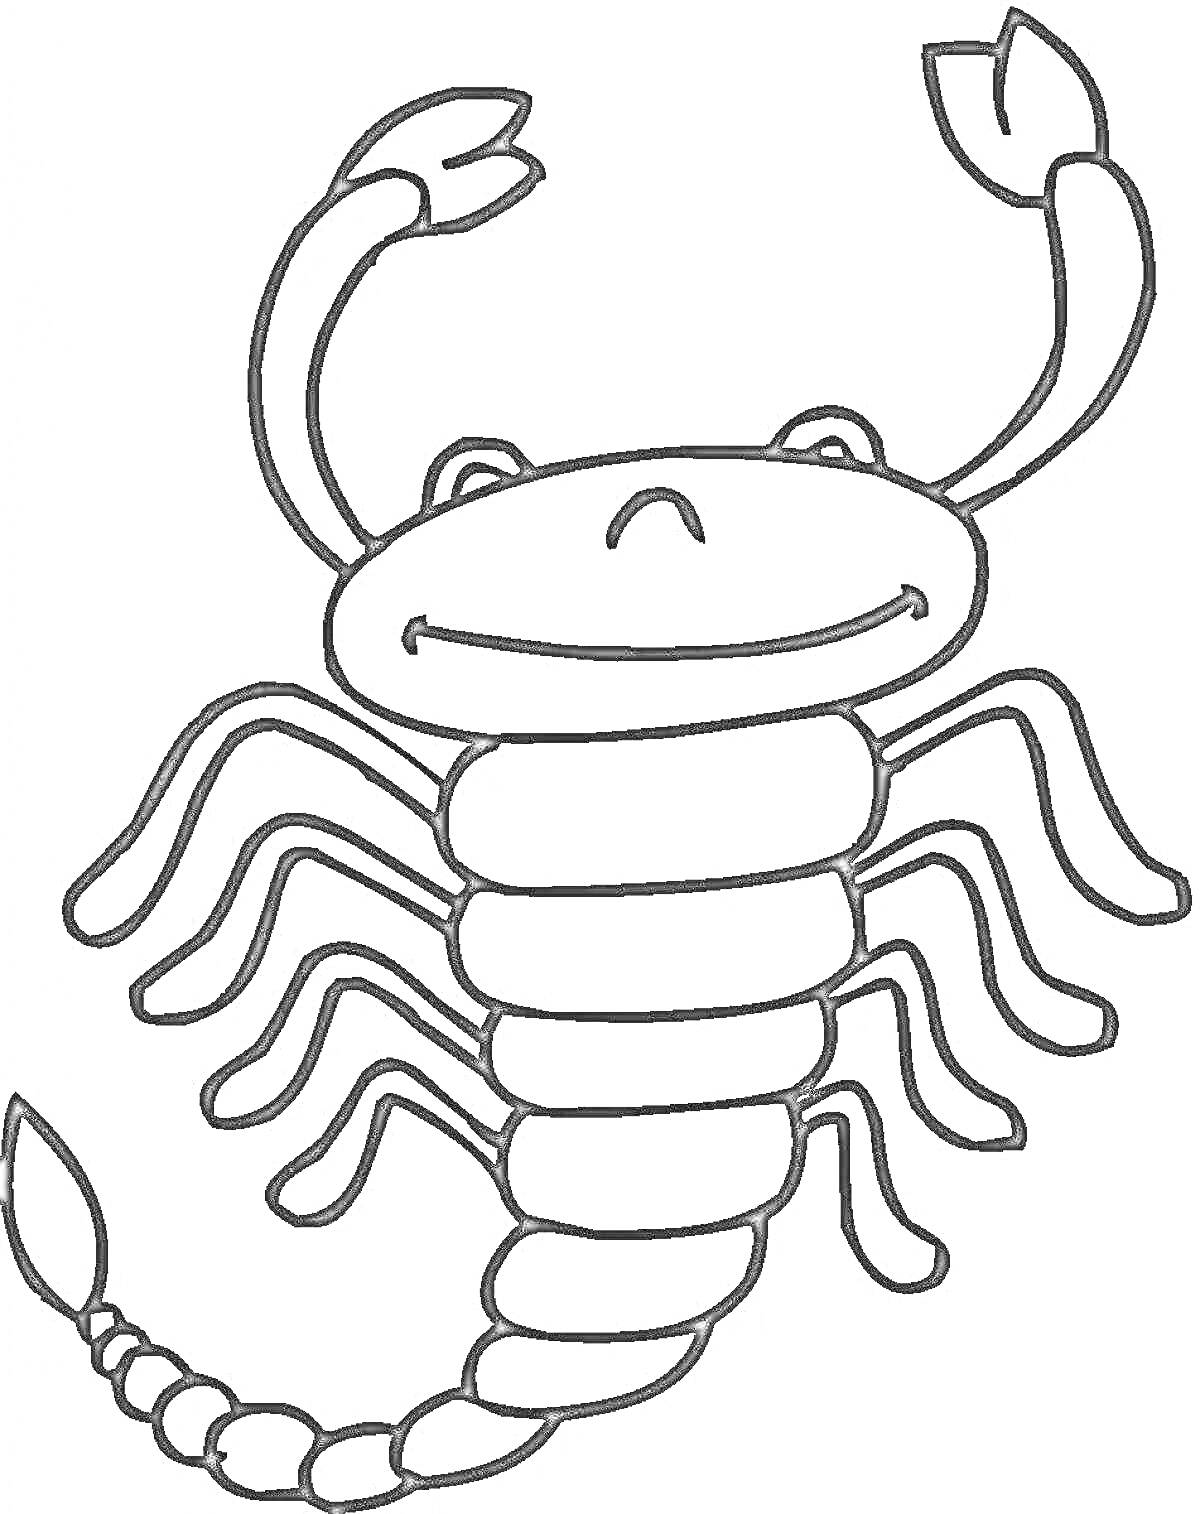 Раскраска Скорпион с улыбающимся лицом, поднятыми клешнями и множеством ног